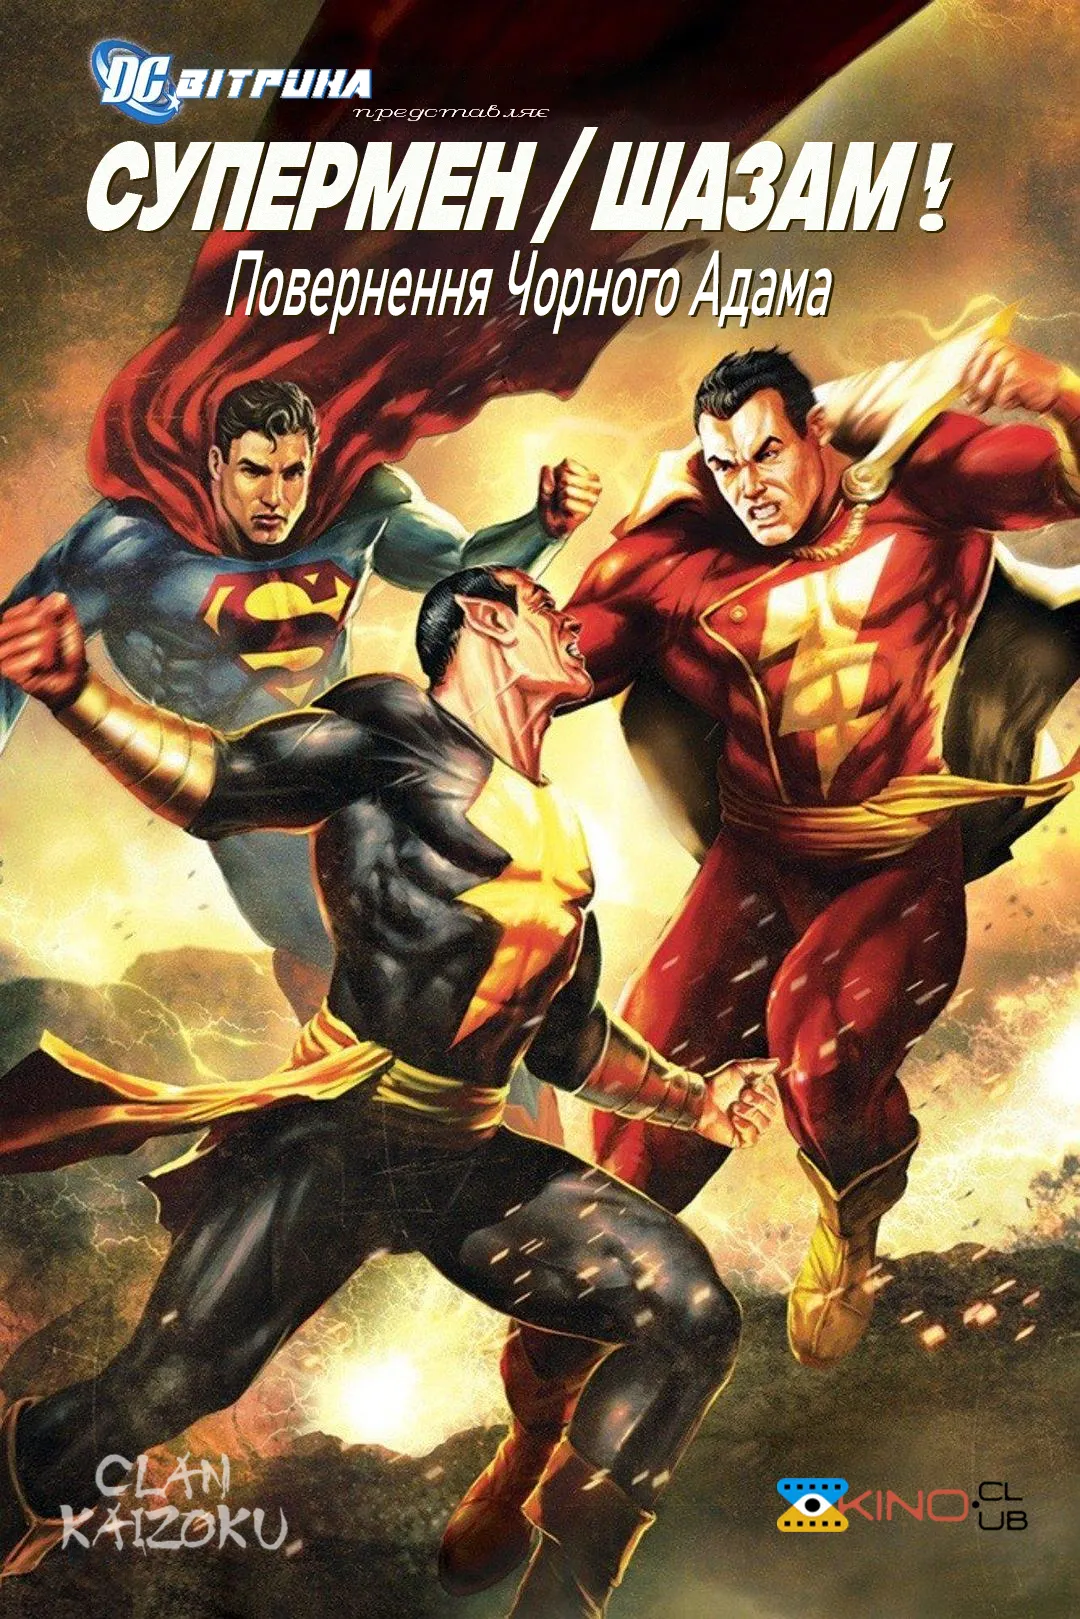 Мультфільм 'Вітрина DC: Супермен/Шазам!: Повернення Чорного Адама' постер